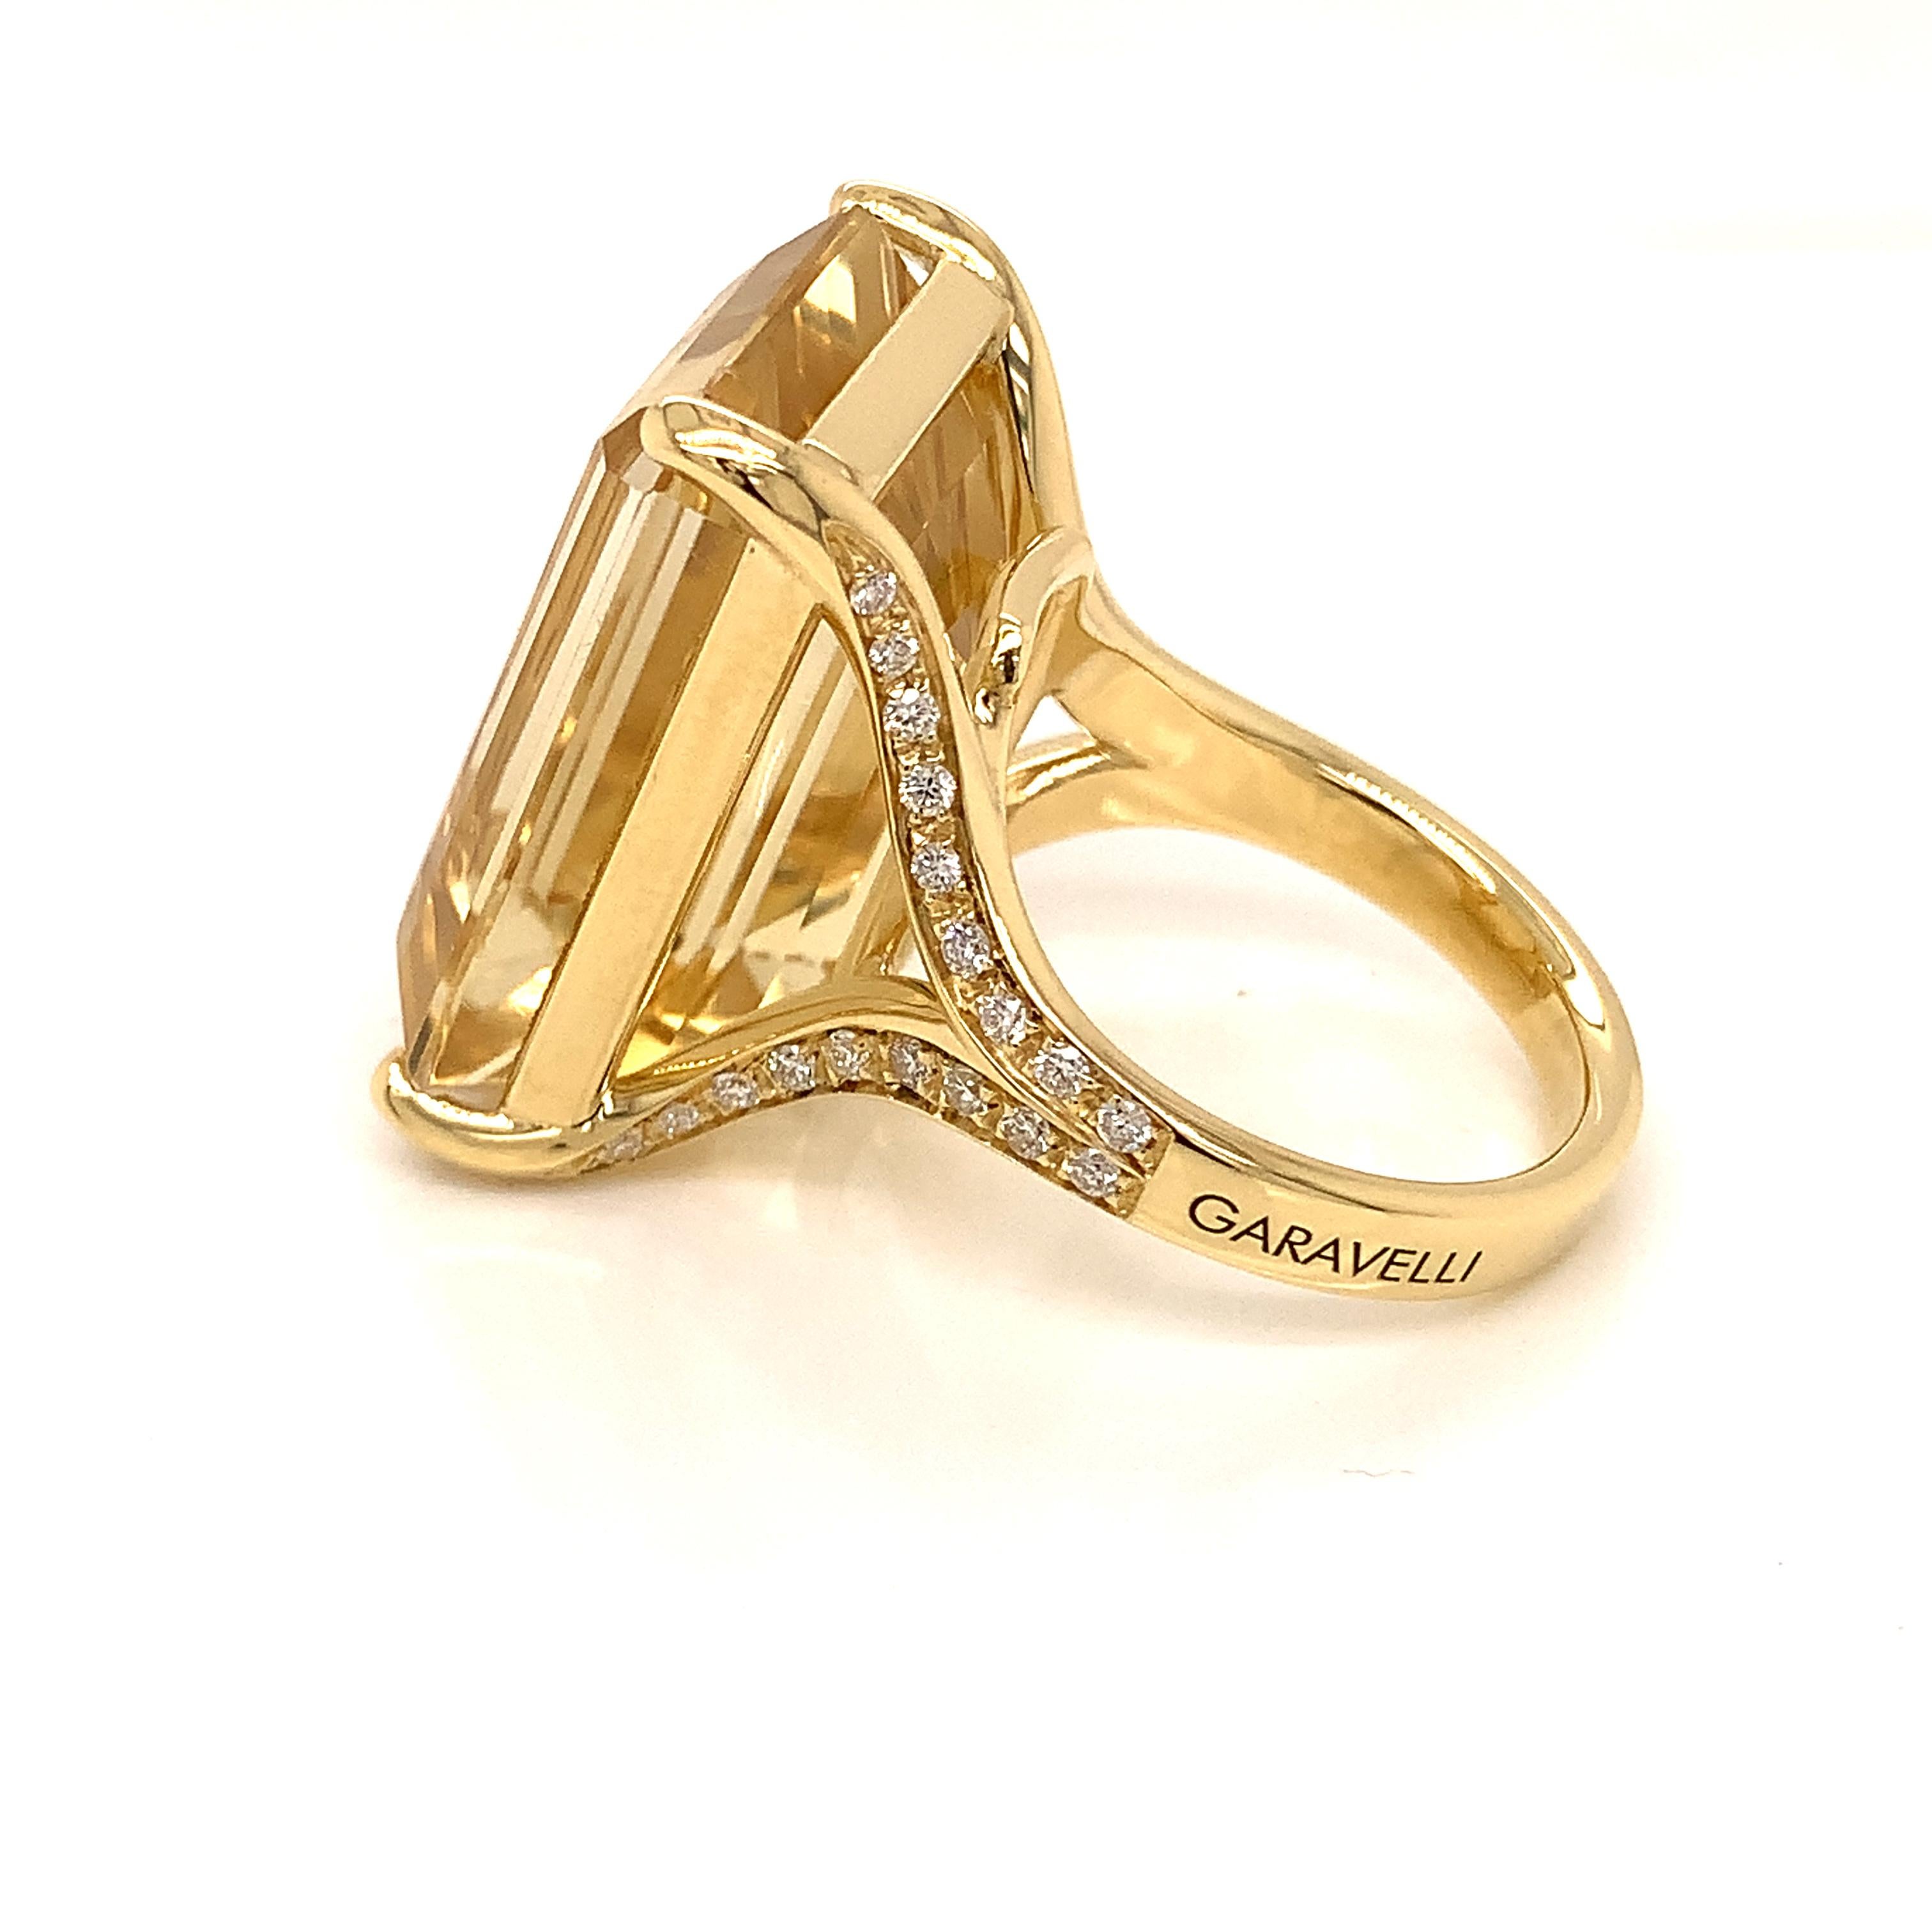 18Kt Yellow Gold Garavelli Ring with White Diamonds & Citrine 1